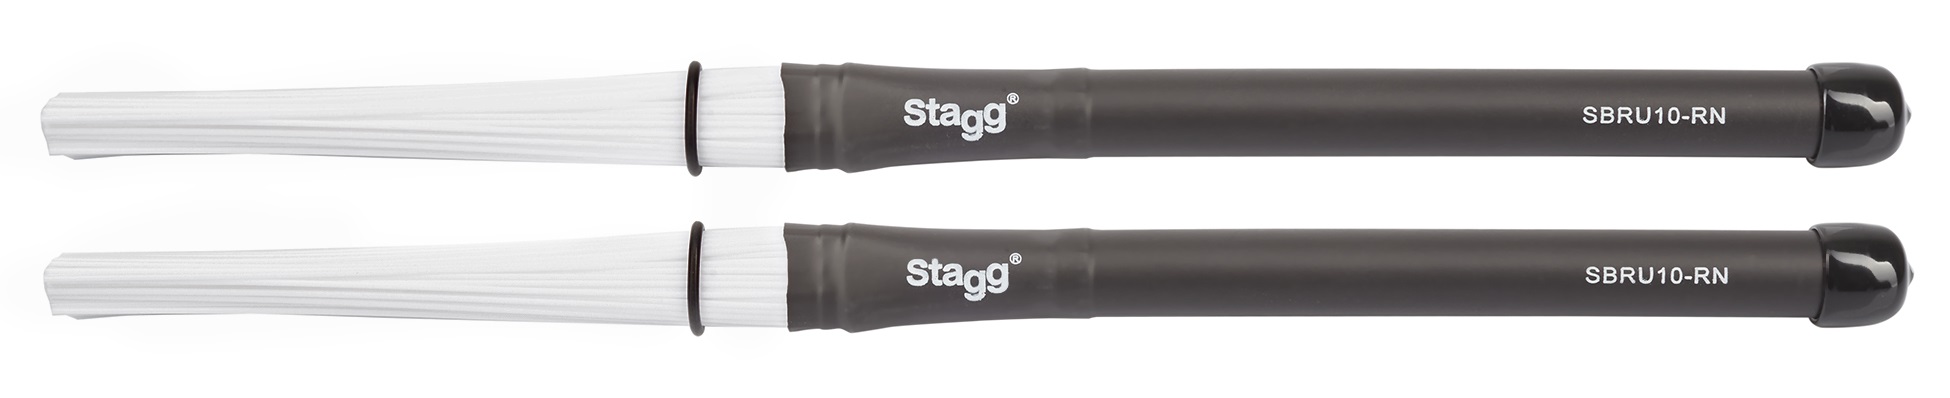 Stagg SBRU10-RN